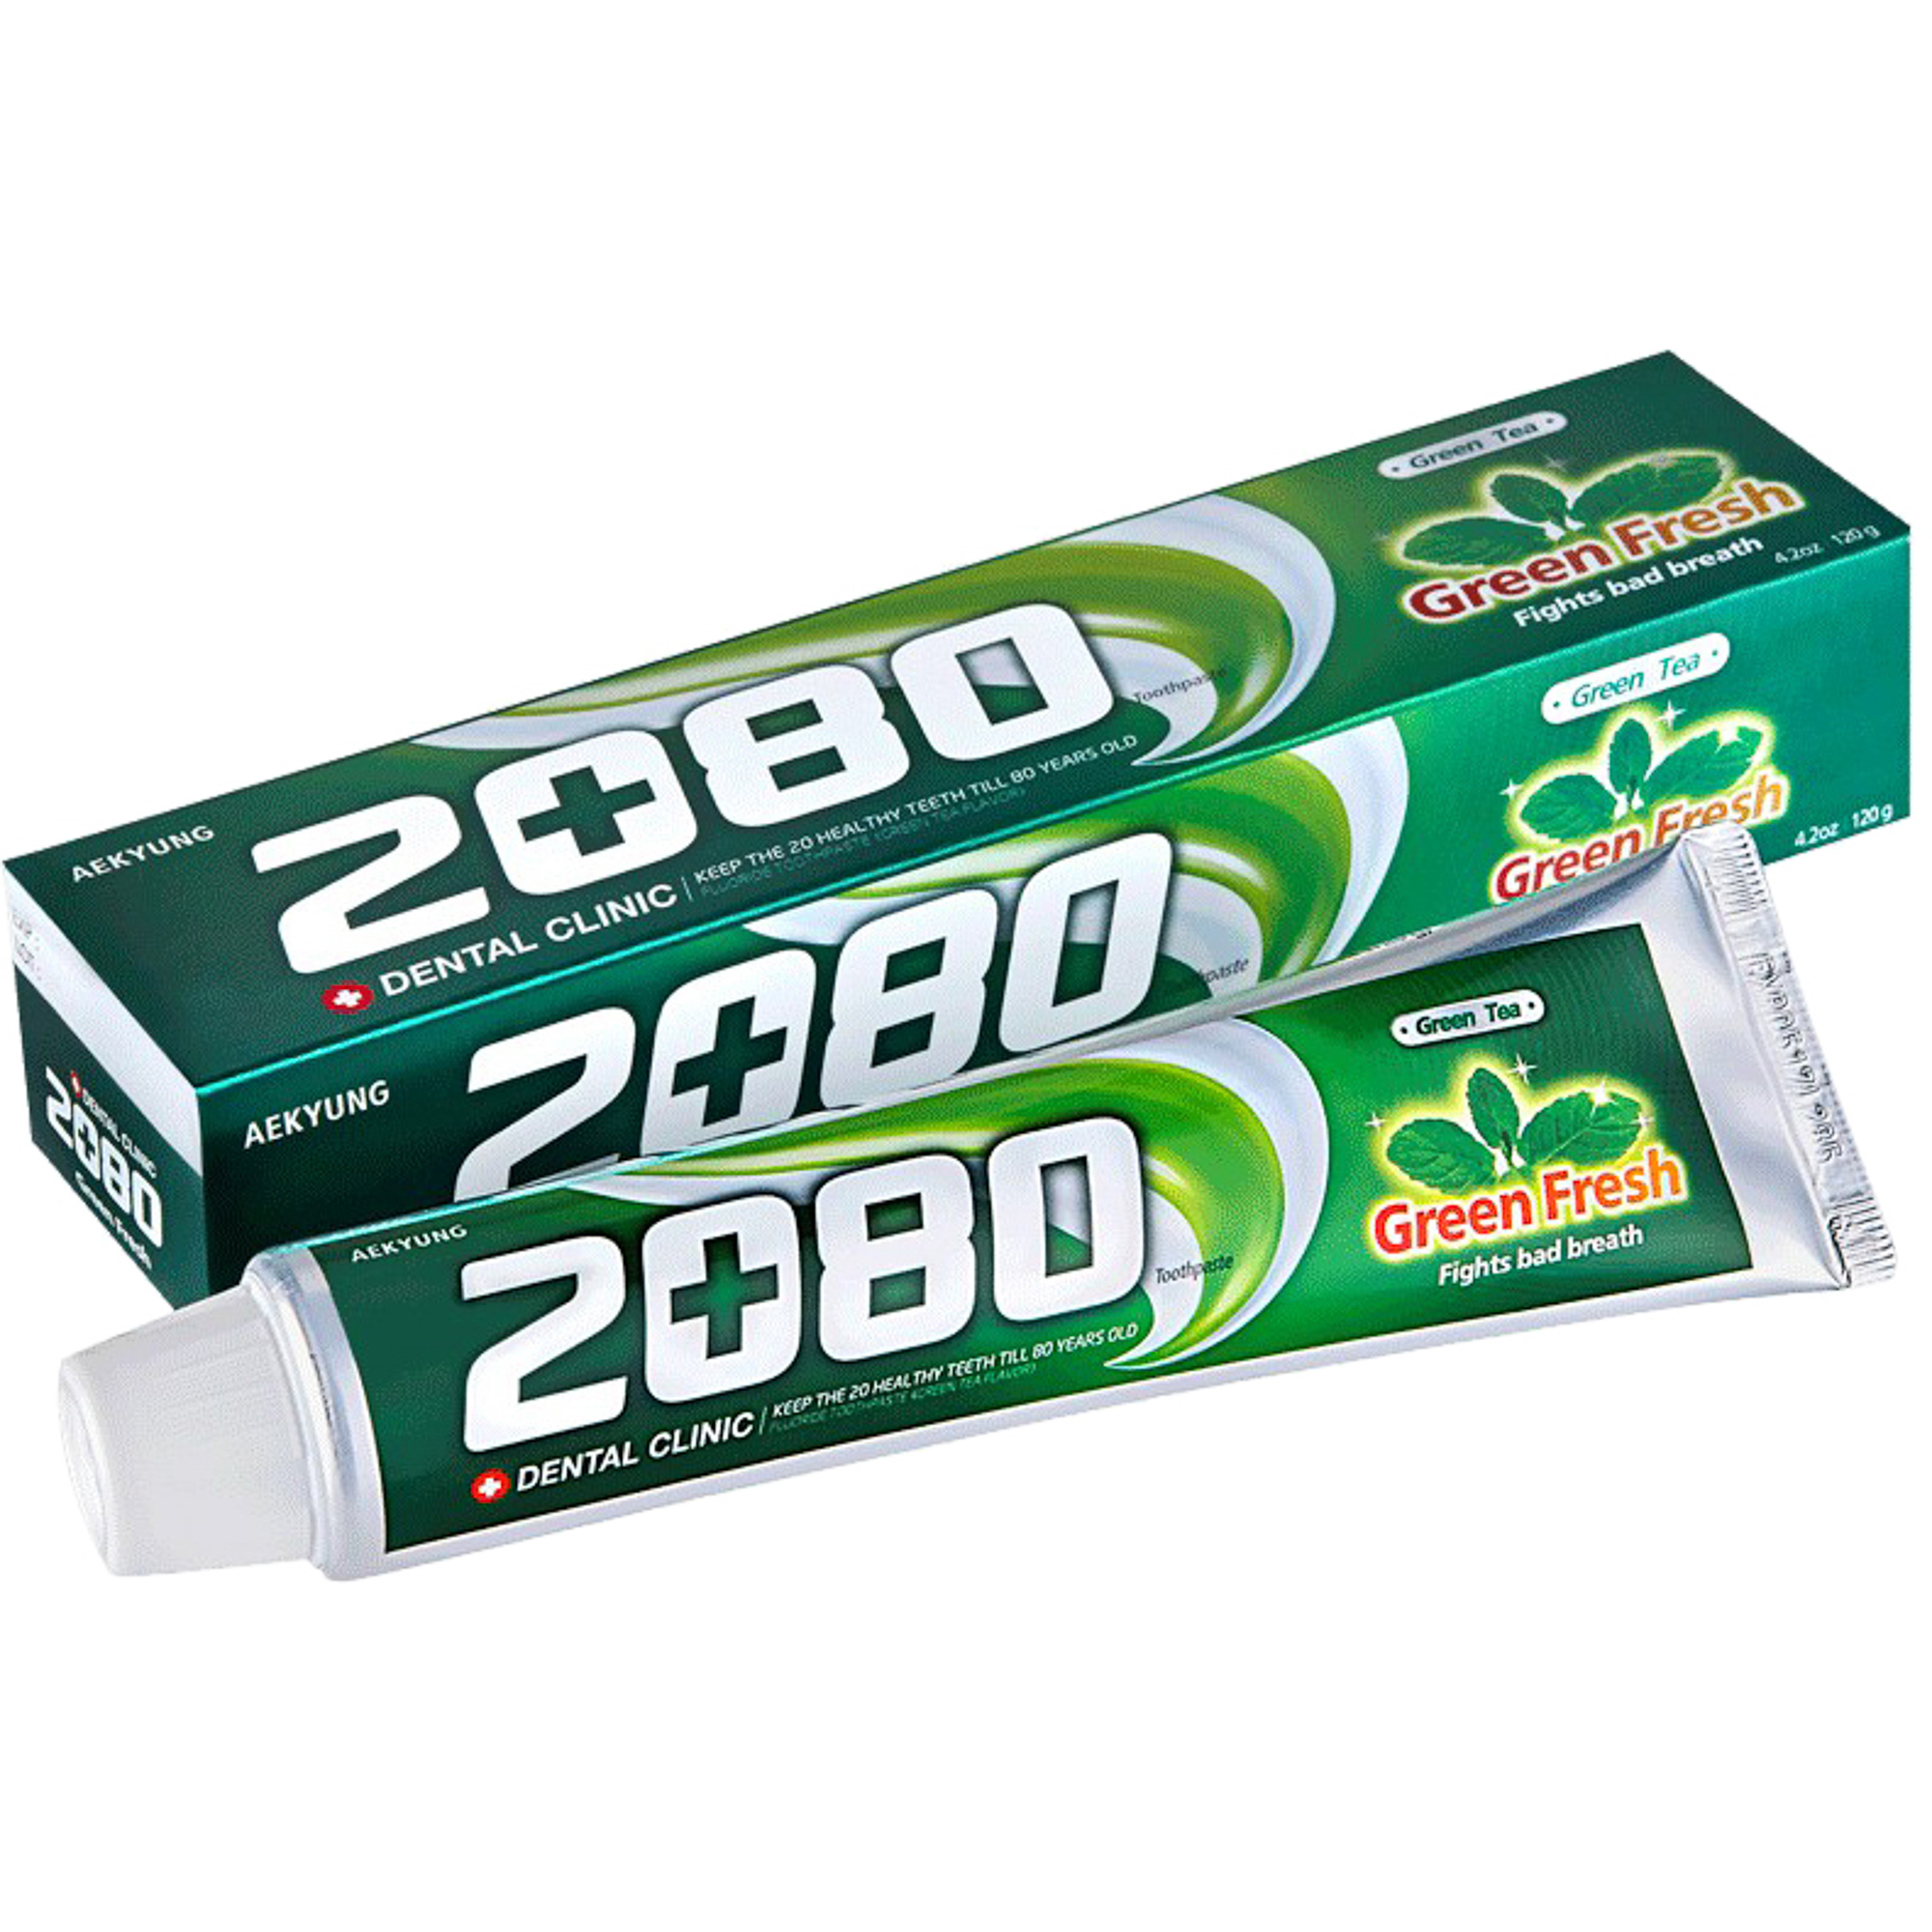 Зубная паста Kerasys Dental Clinic 2080 Green Fresh Зеленый чай 120 г чай зеленый curtis fresh mojito 20 пир